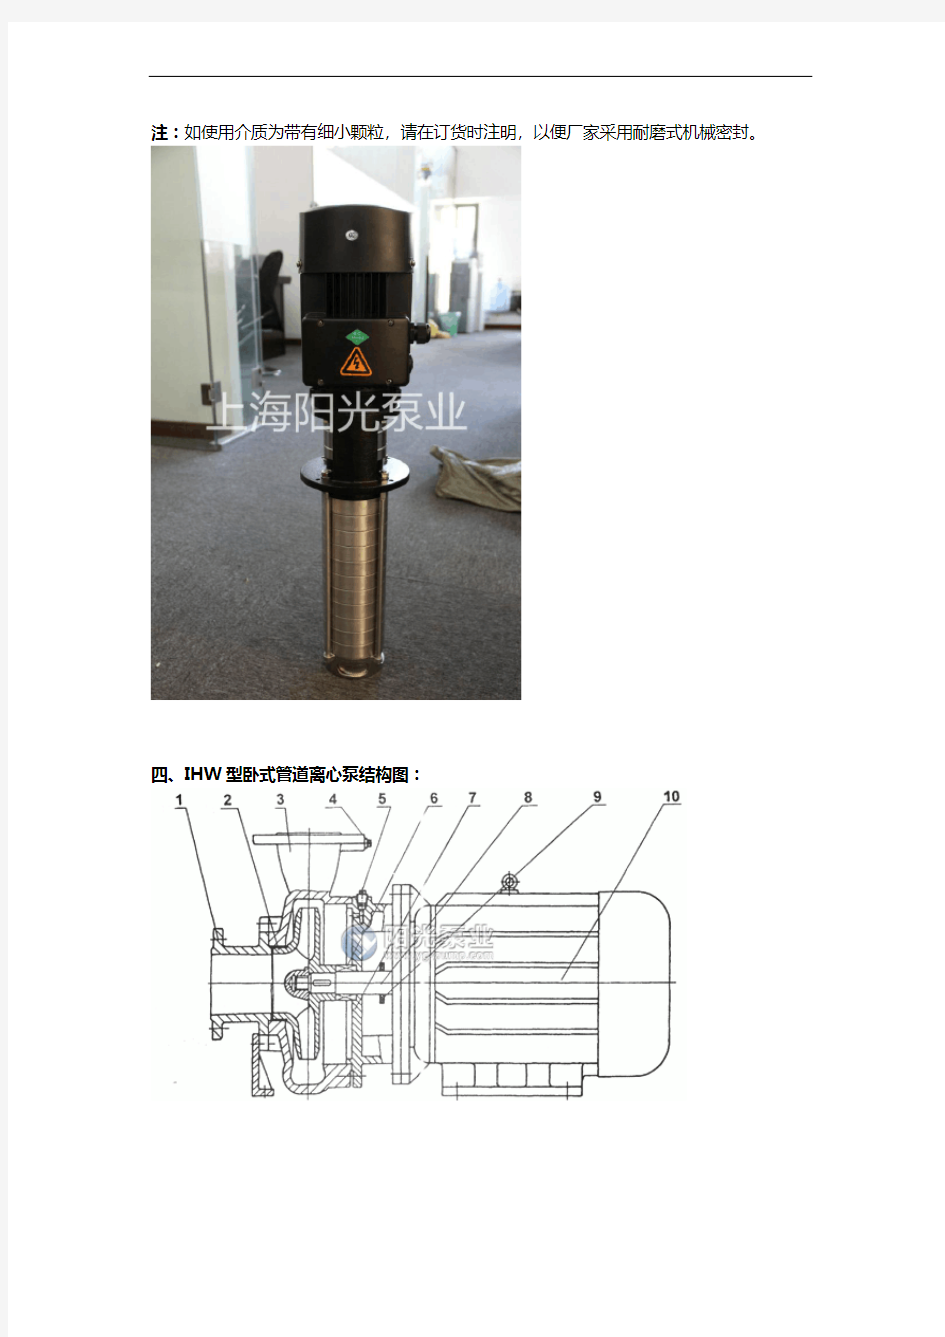 IHW型卧式管道离心泵产品特点及工作条件介绍